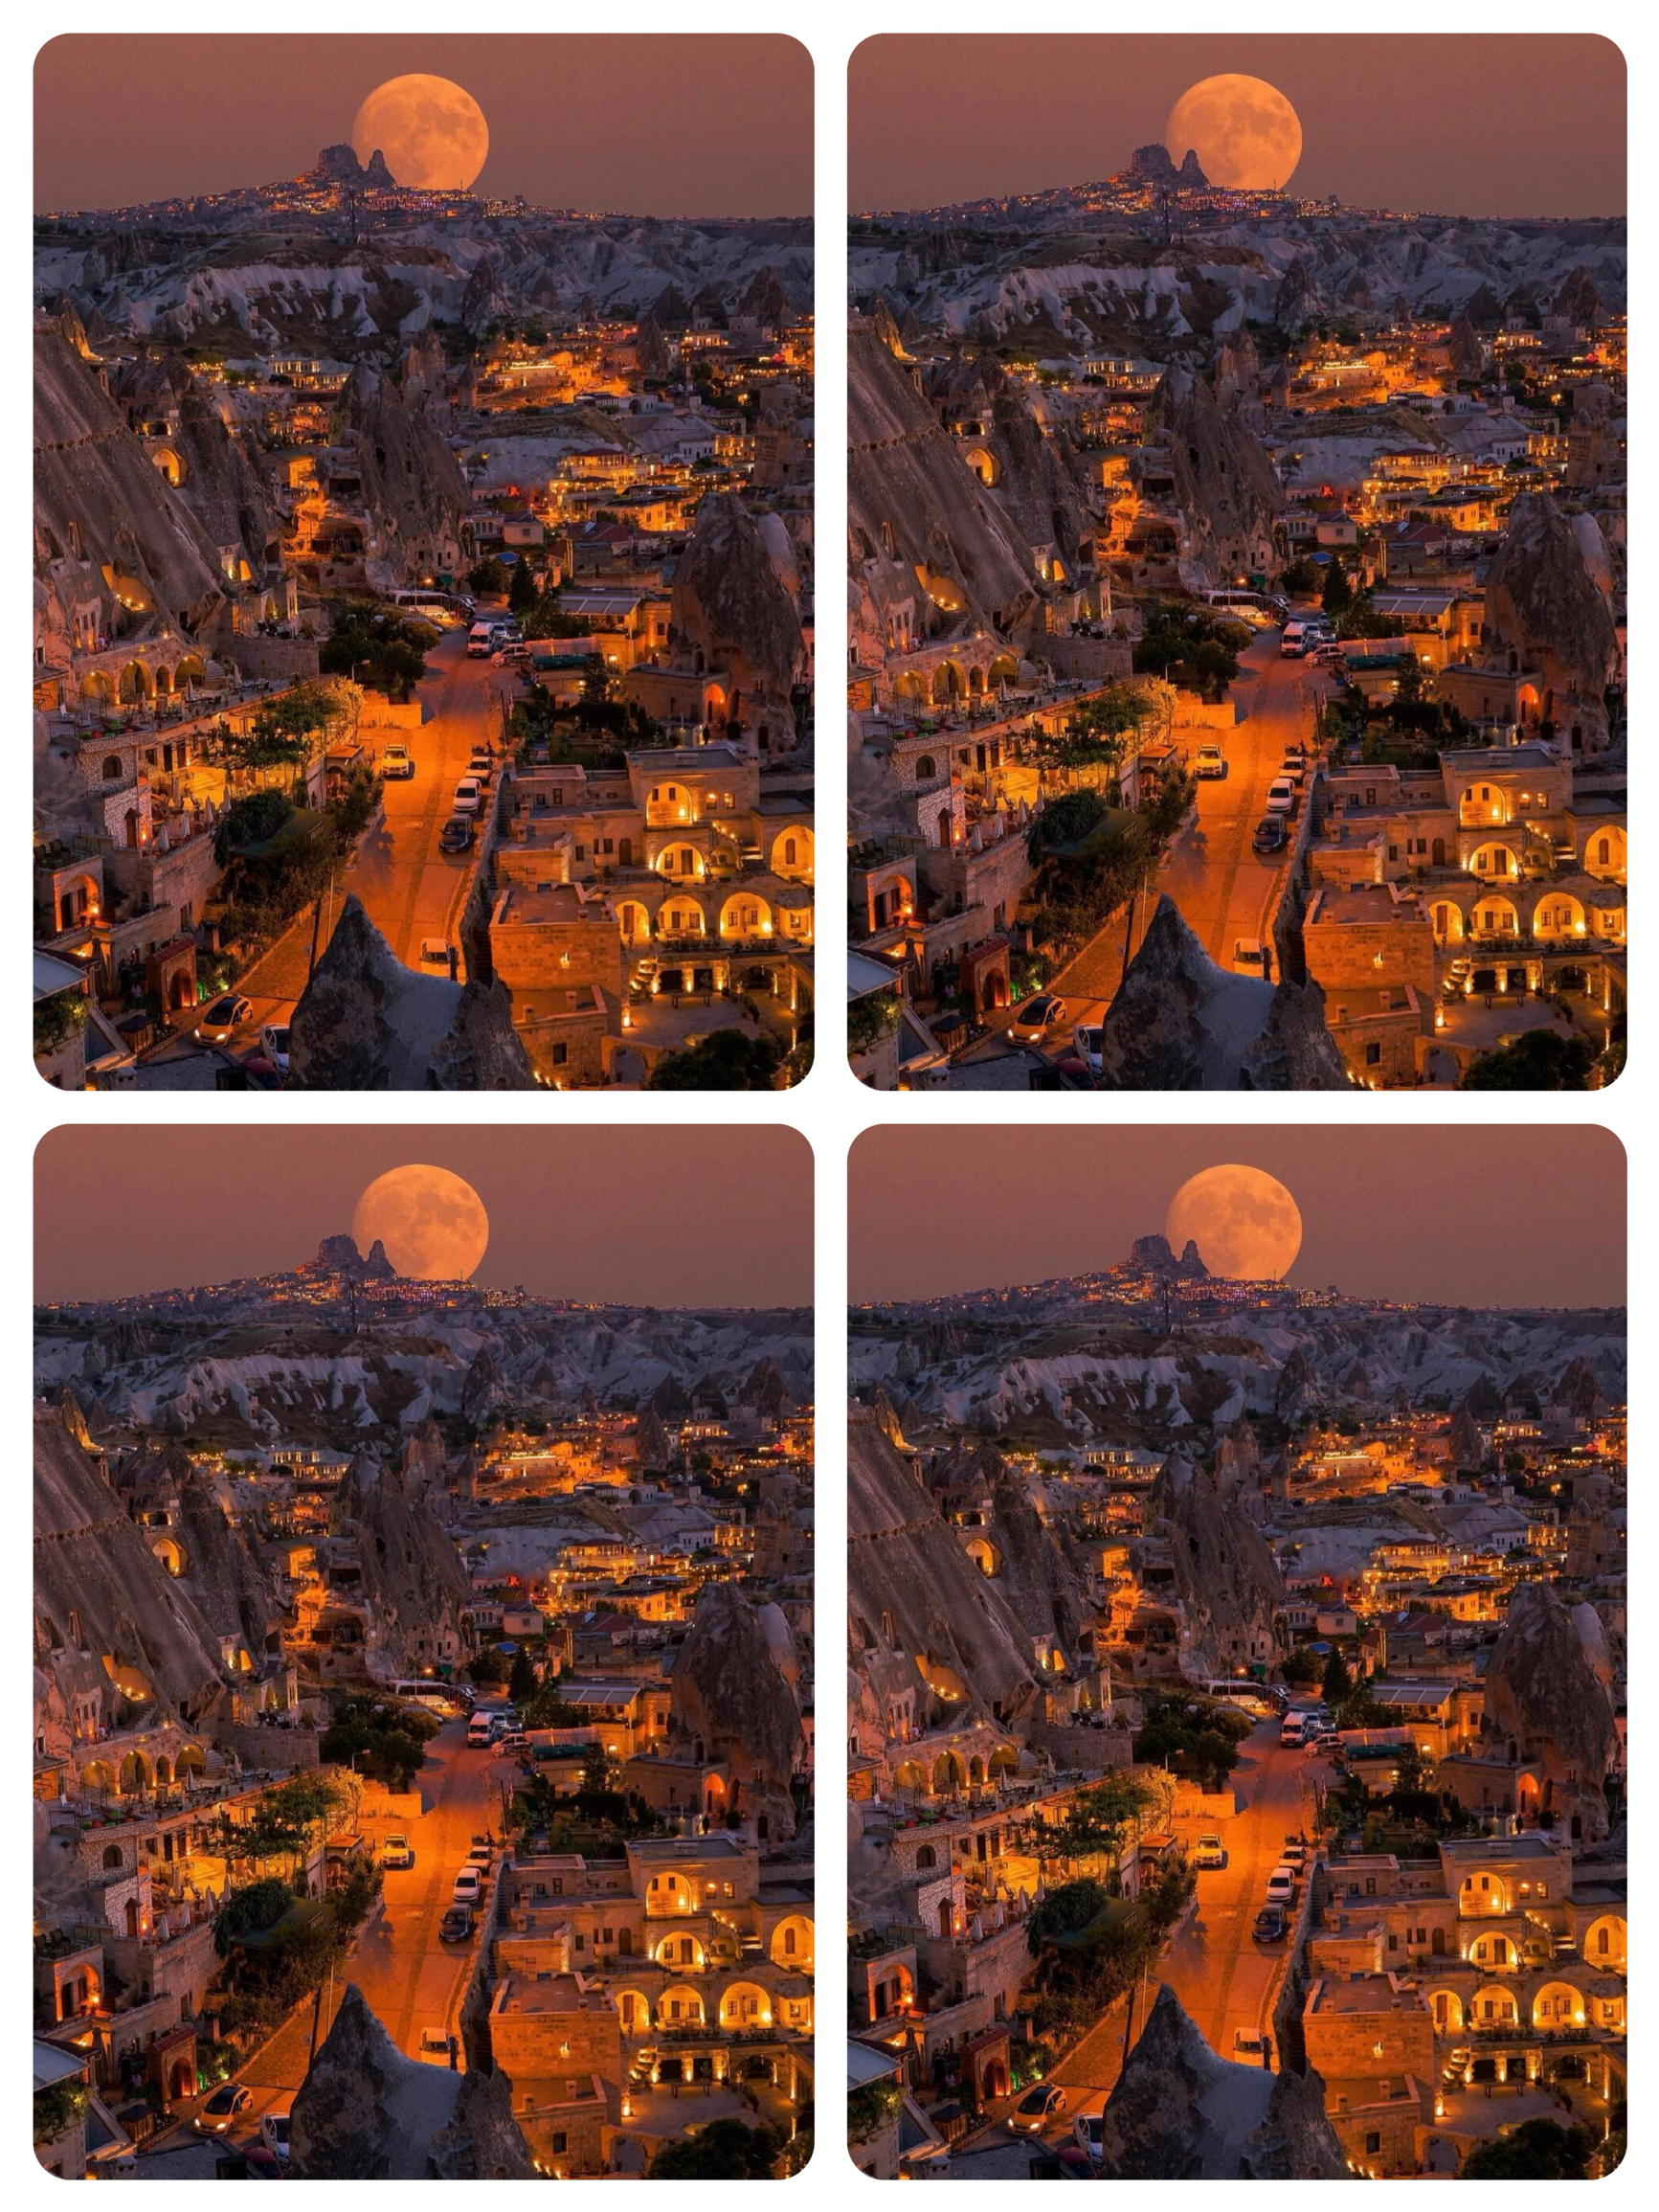 土耳其的月球动漫王国，地球十大美景之一🪐